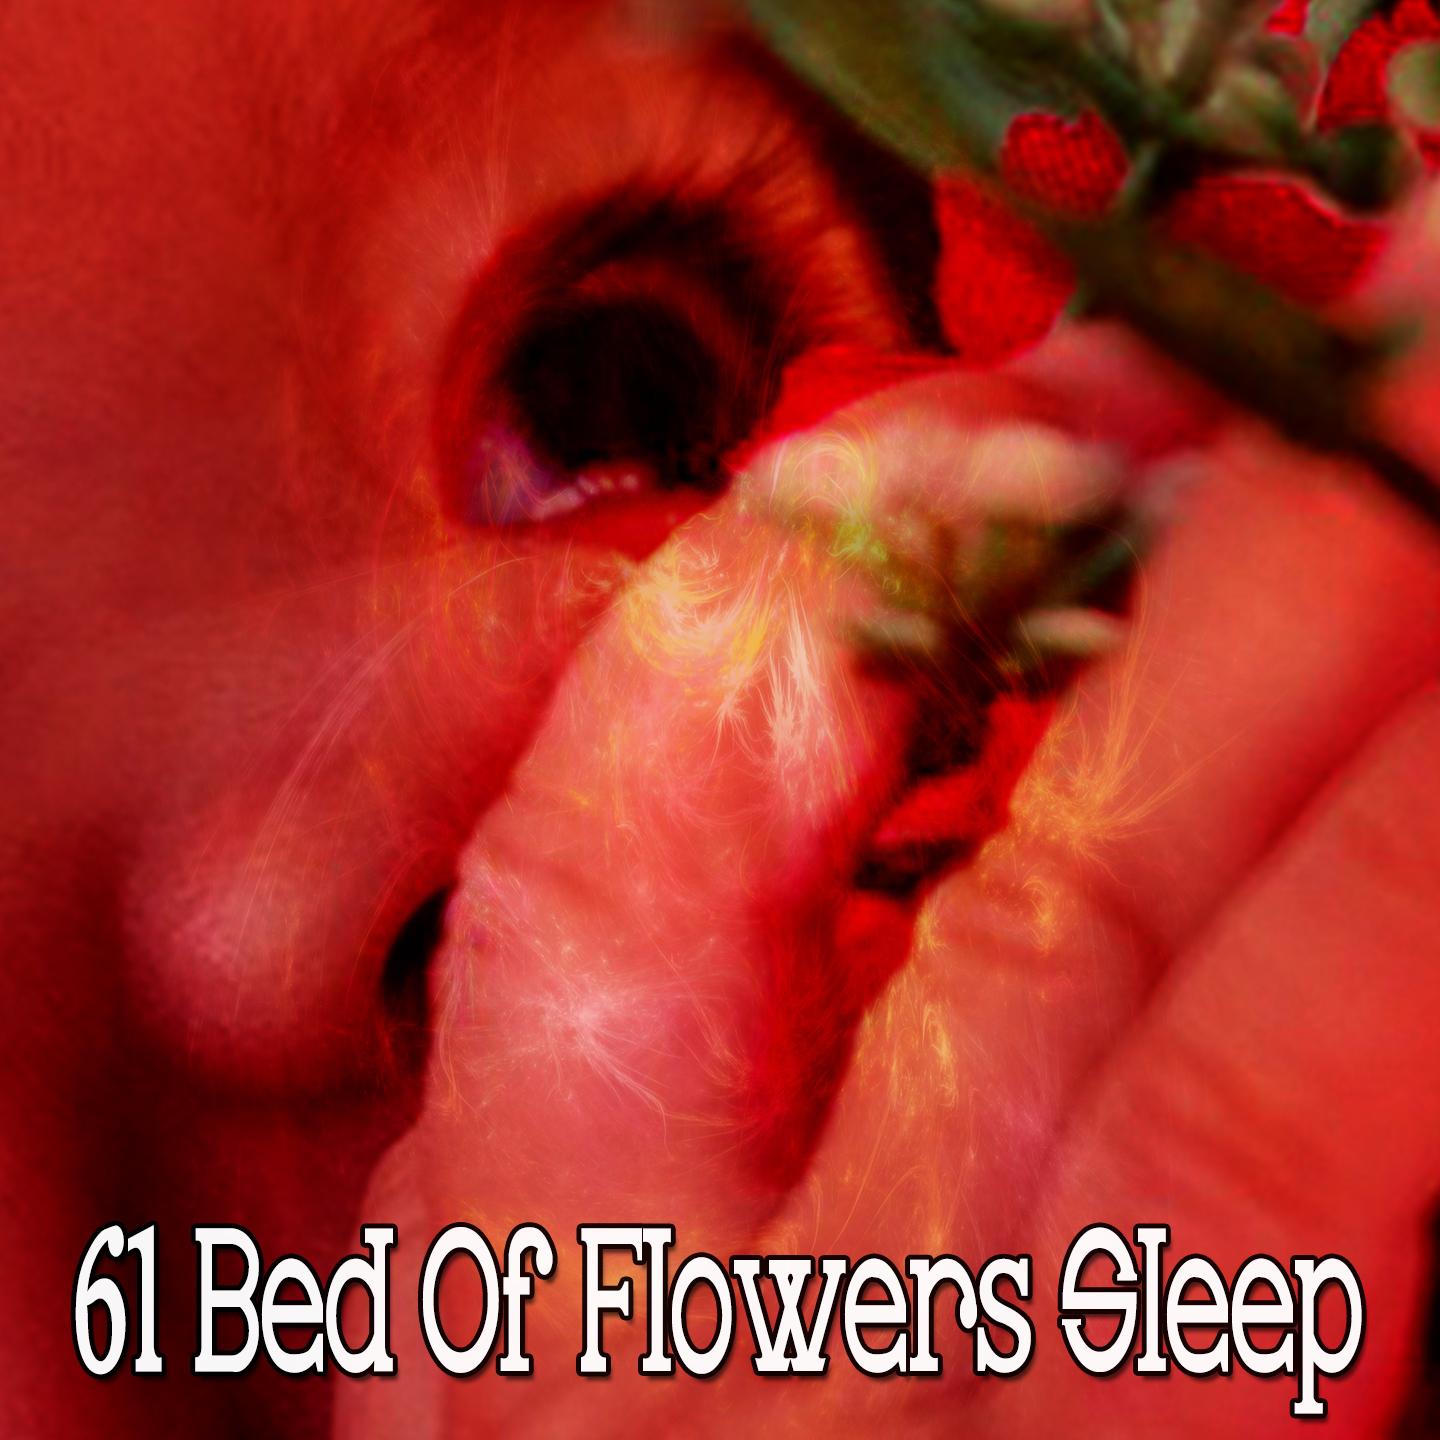 61 Bed of Flowers Sleep